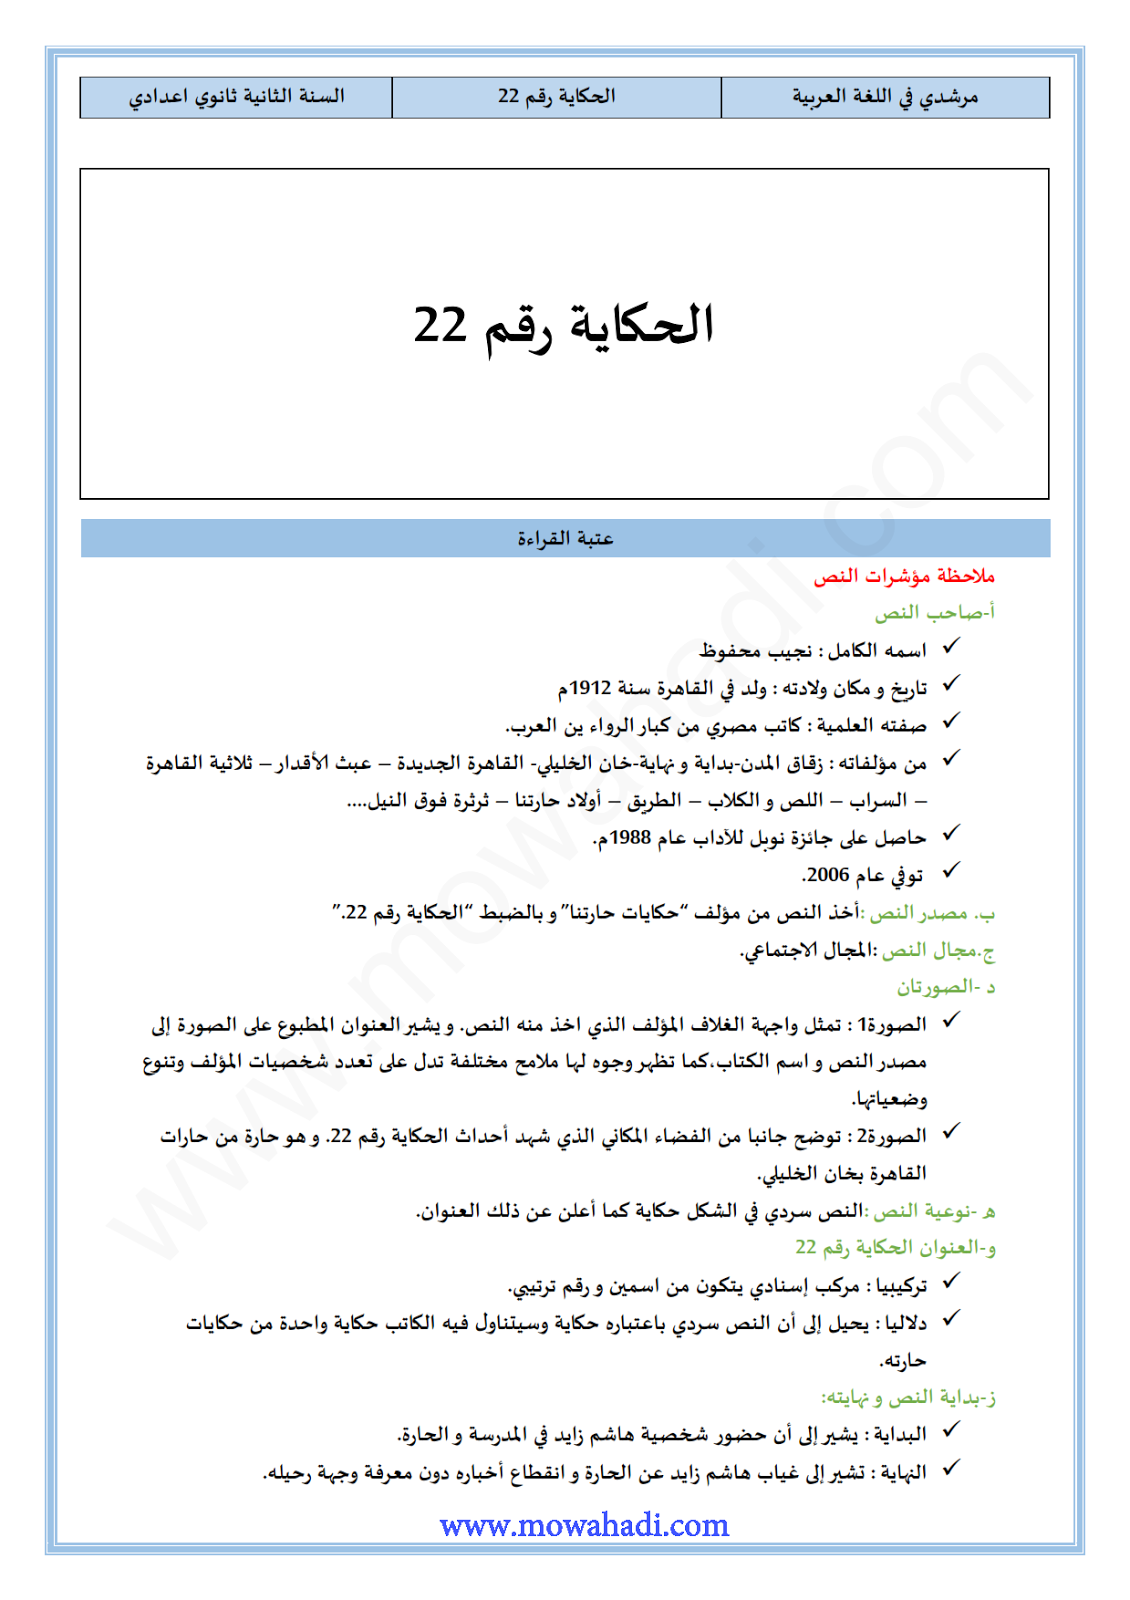 درس الحكاية رقم 22 للسنة الثانية اعدادي مادة اللغة العربية حياتي